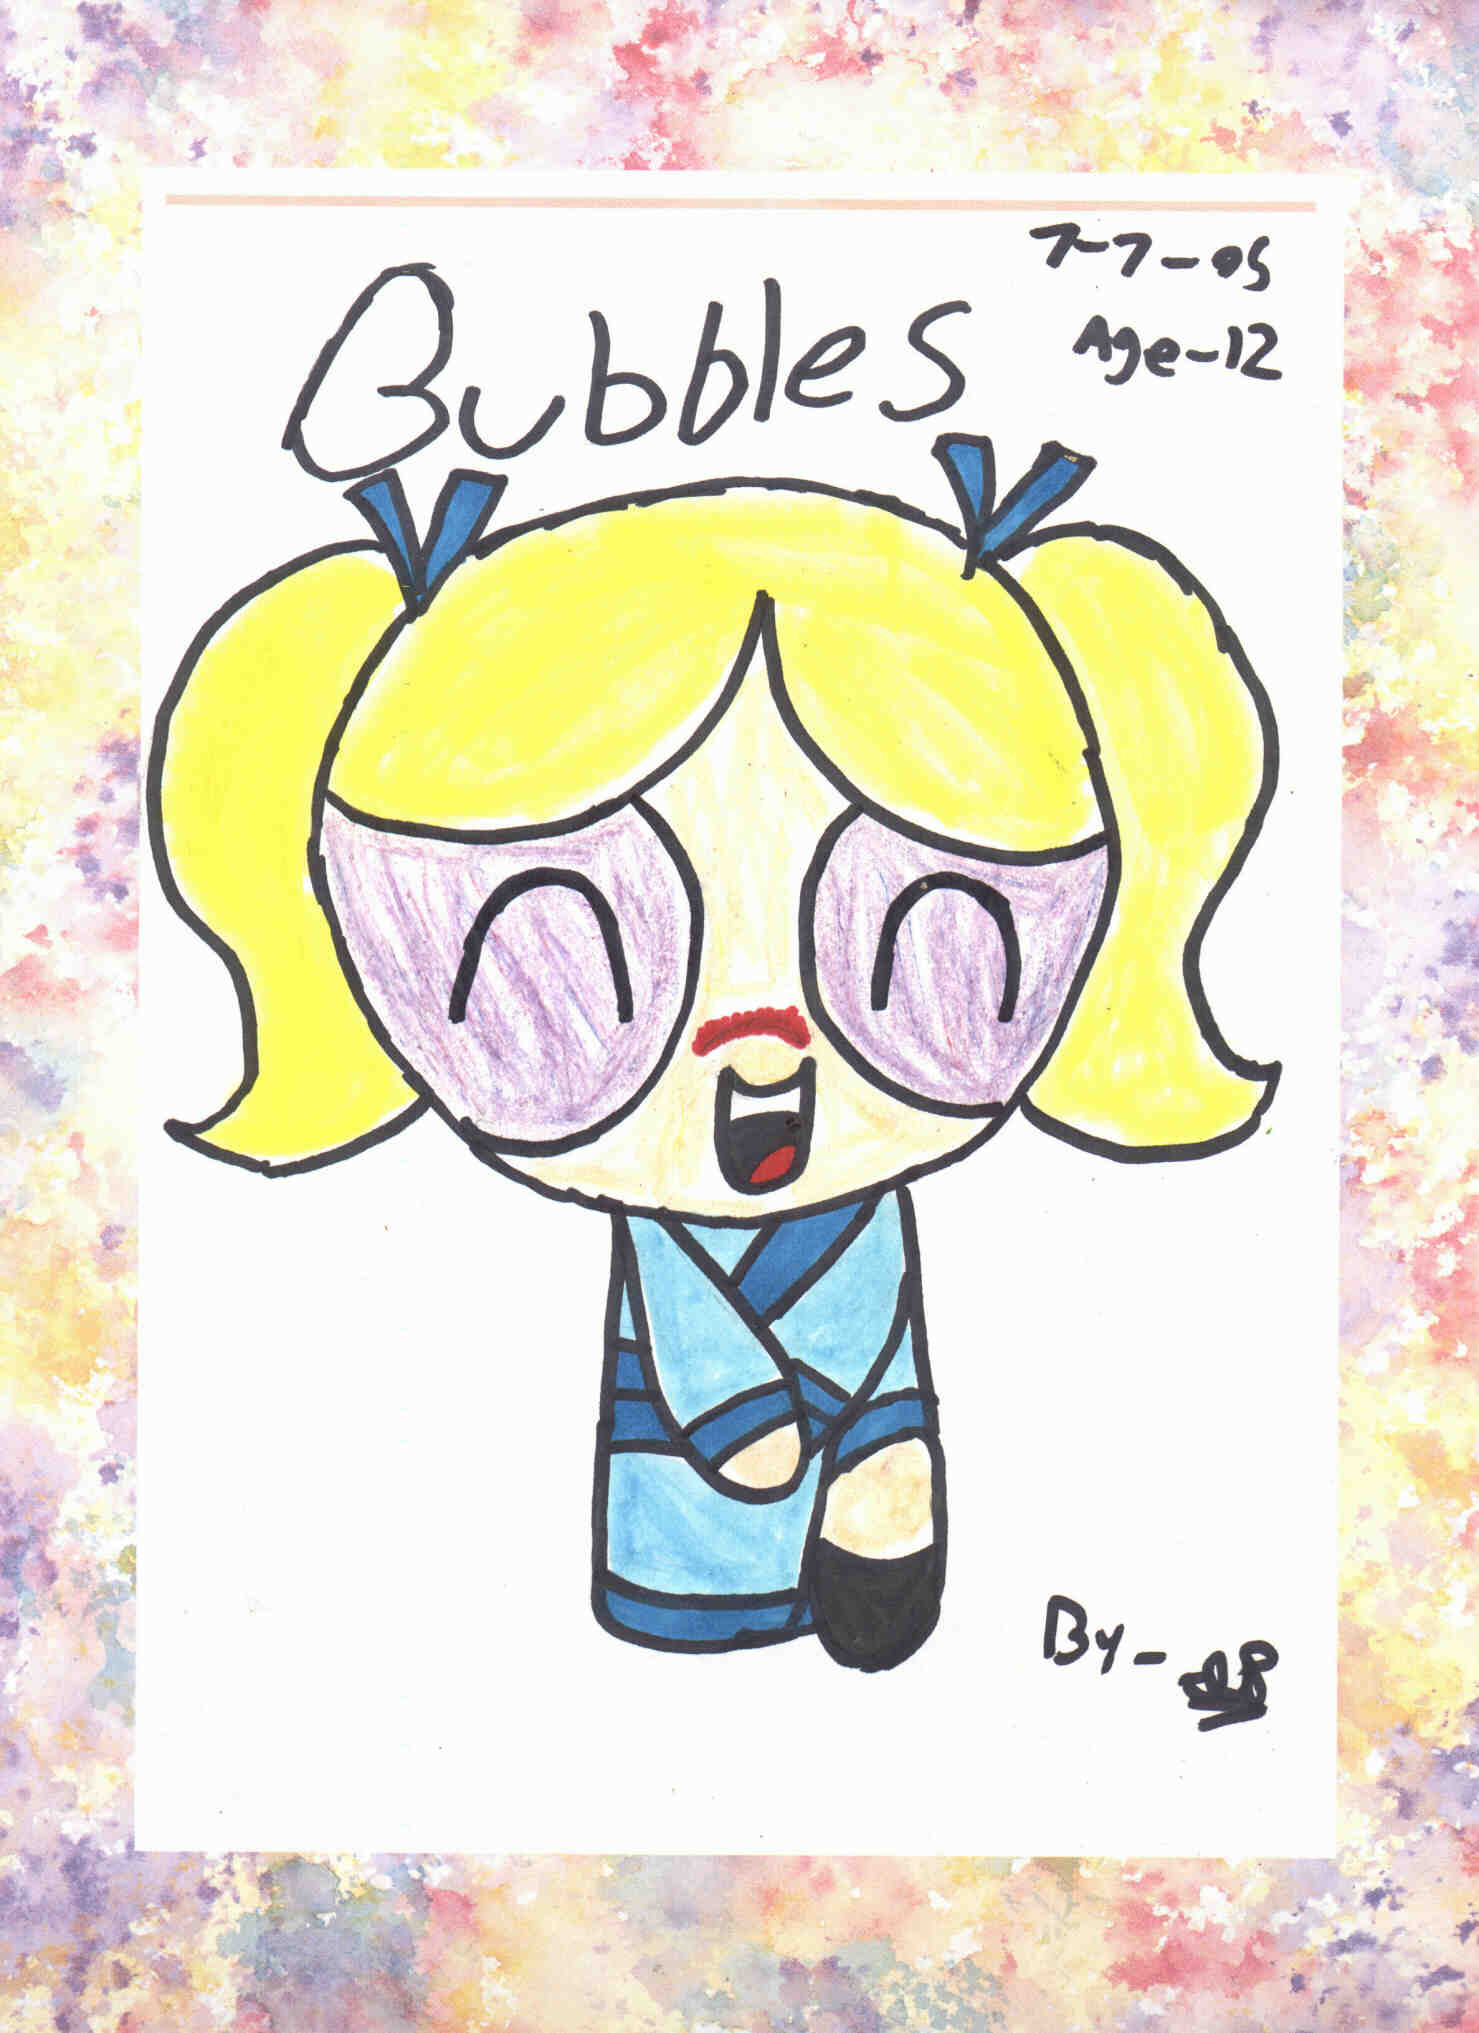 Bubbles in a kimono by SSGoshin4